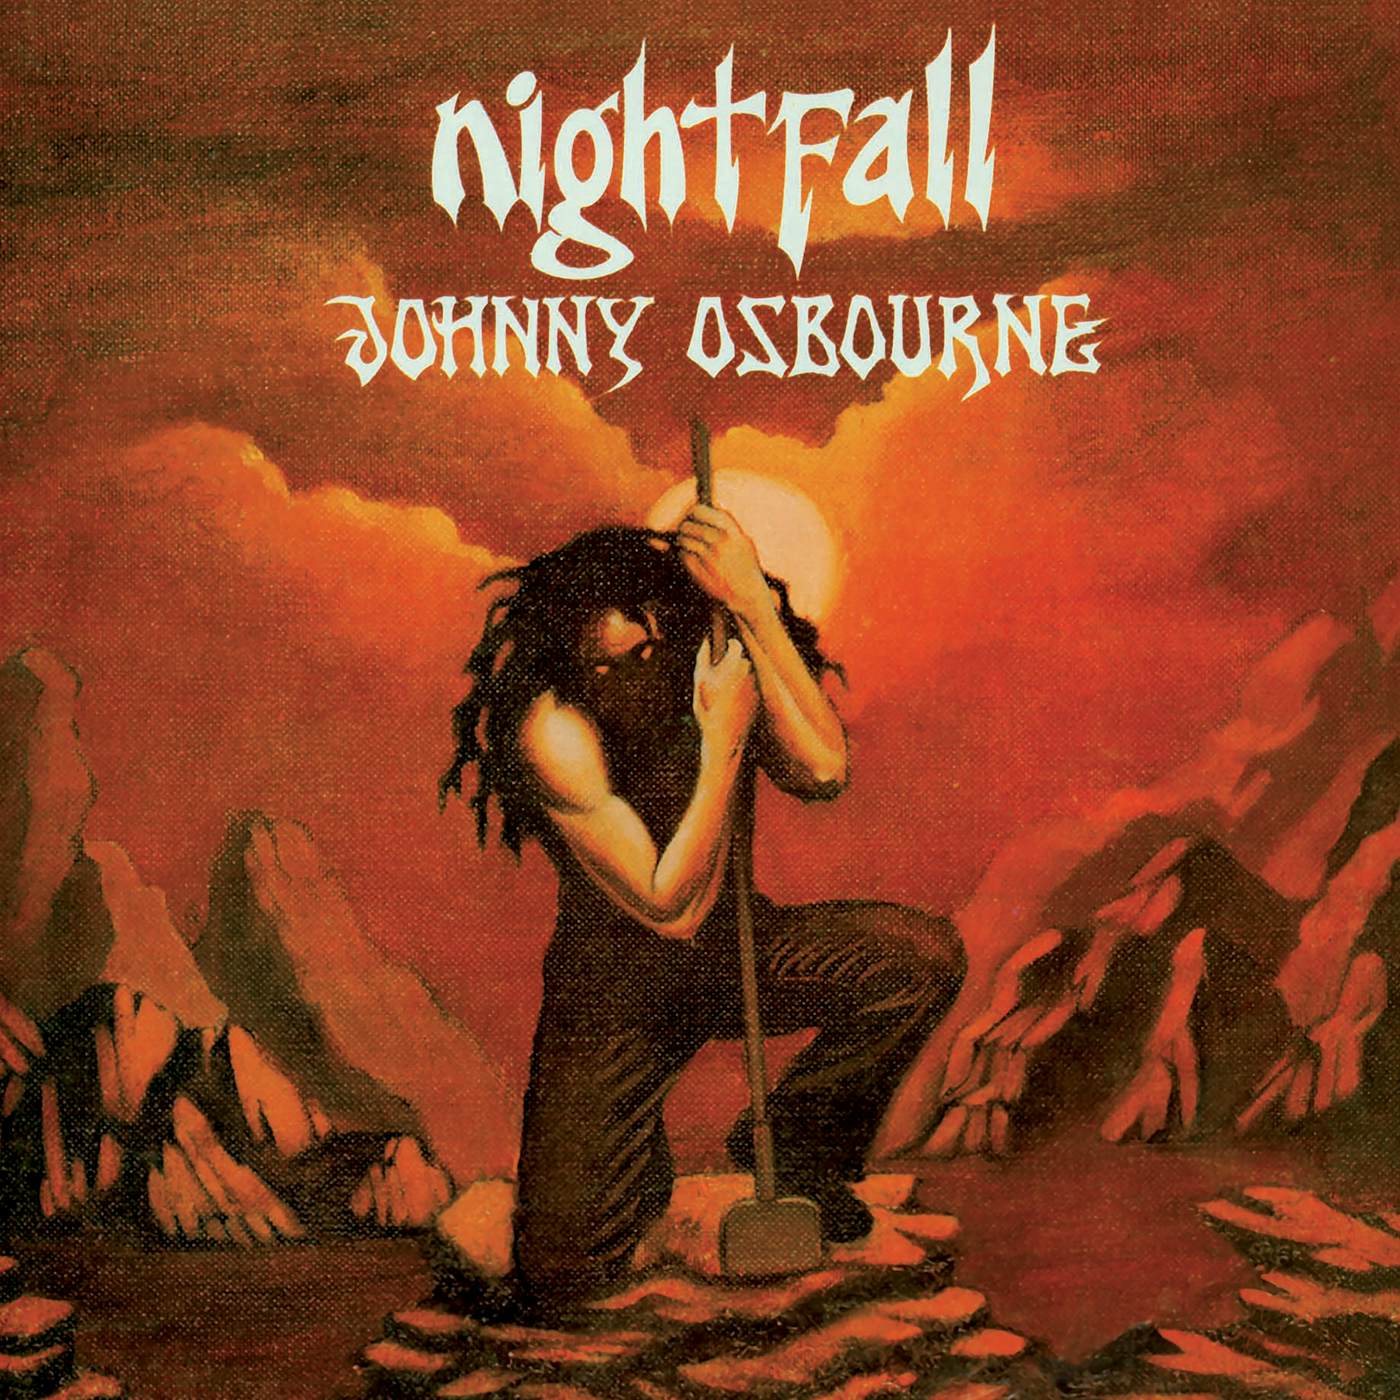 Johnny Osbourne Nightfall Vinyl Record